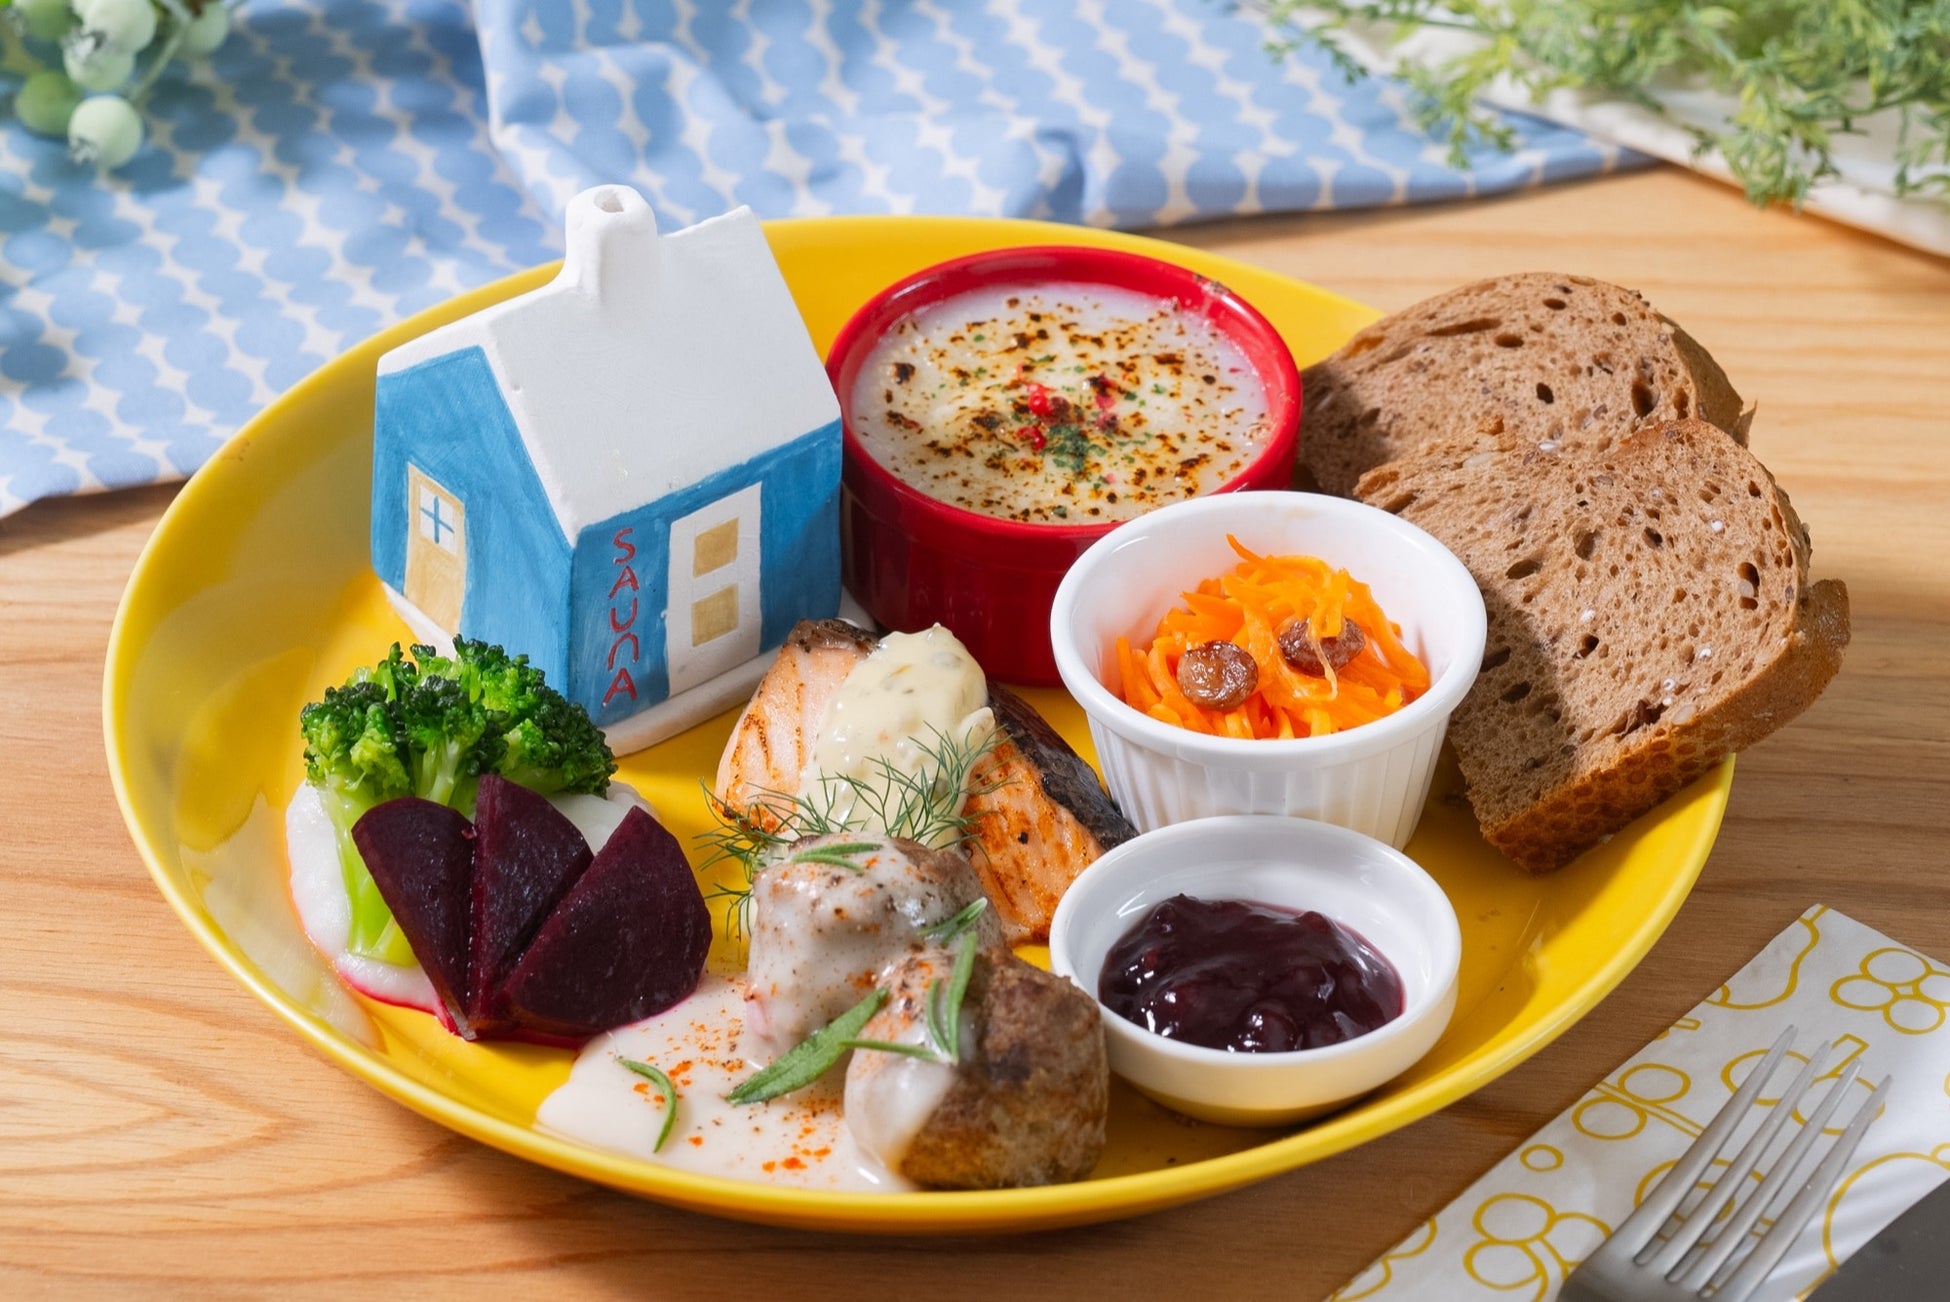 おふろcafe utataneに「Nordic Cafe ＆ Dining matka」がオープンオーロラなど北欧の風景から着想を得た、食の旅行体験を提供します